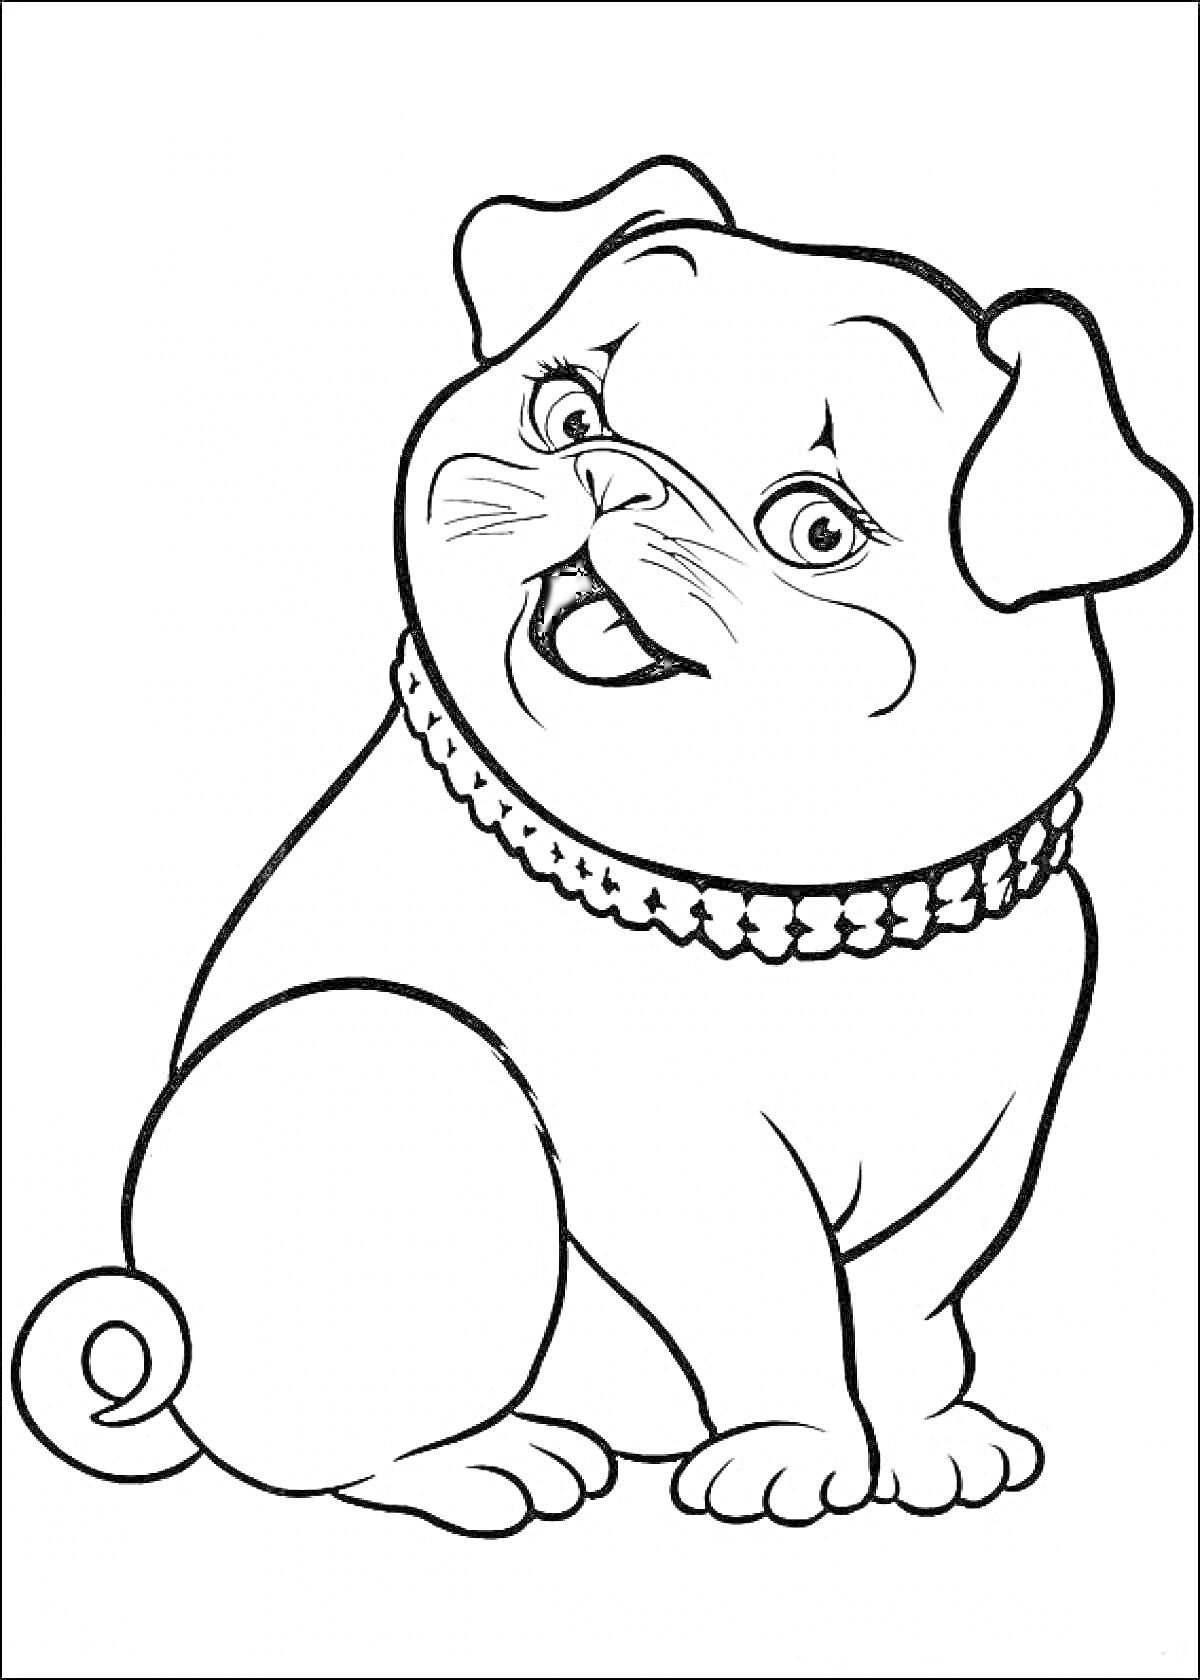 Раскраска Собака с воротником в стиле Барби Дюймовочка